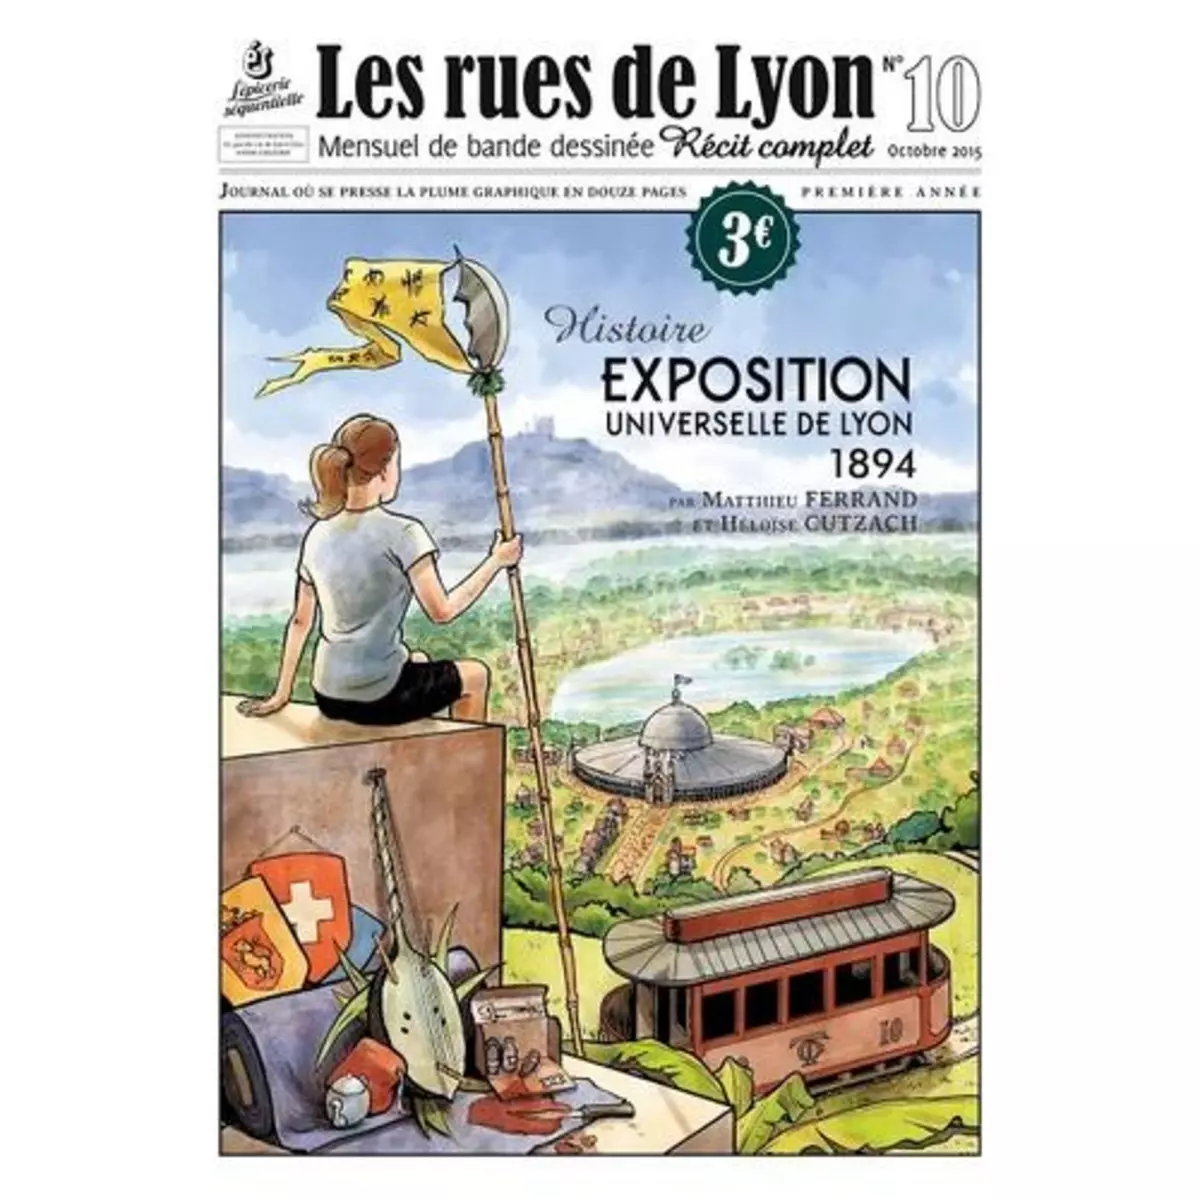  LES RUES DE LYON N° 10 : L'EXPOSITION UNIVERSELLE DE LYON. 1894, Ferrand Mathieu